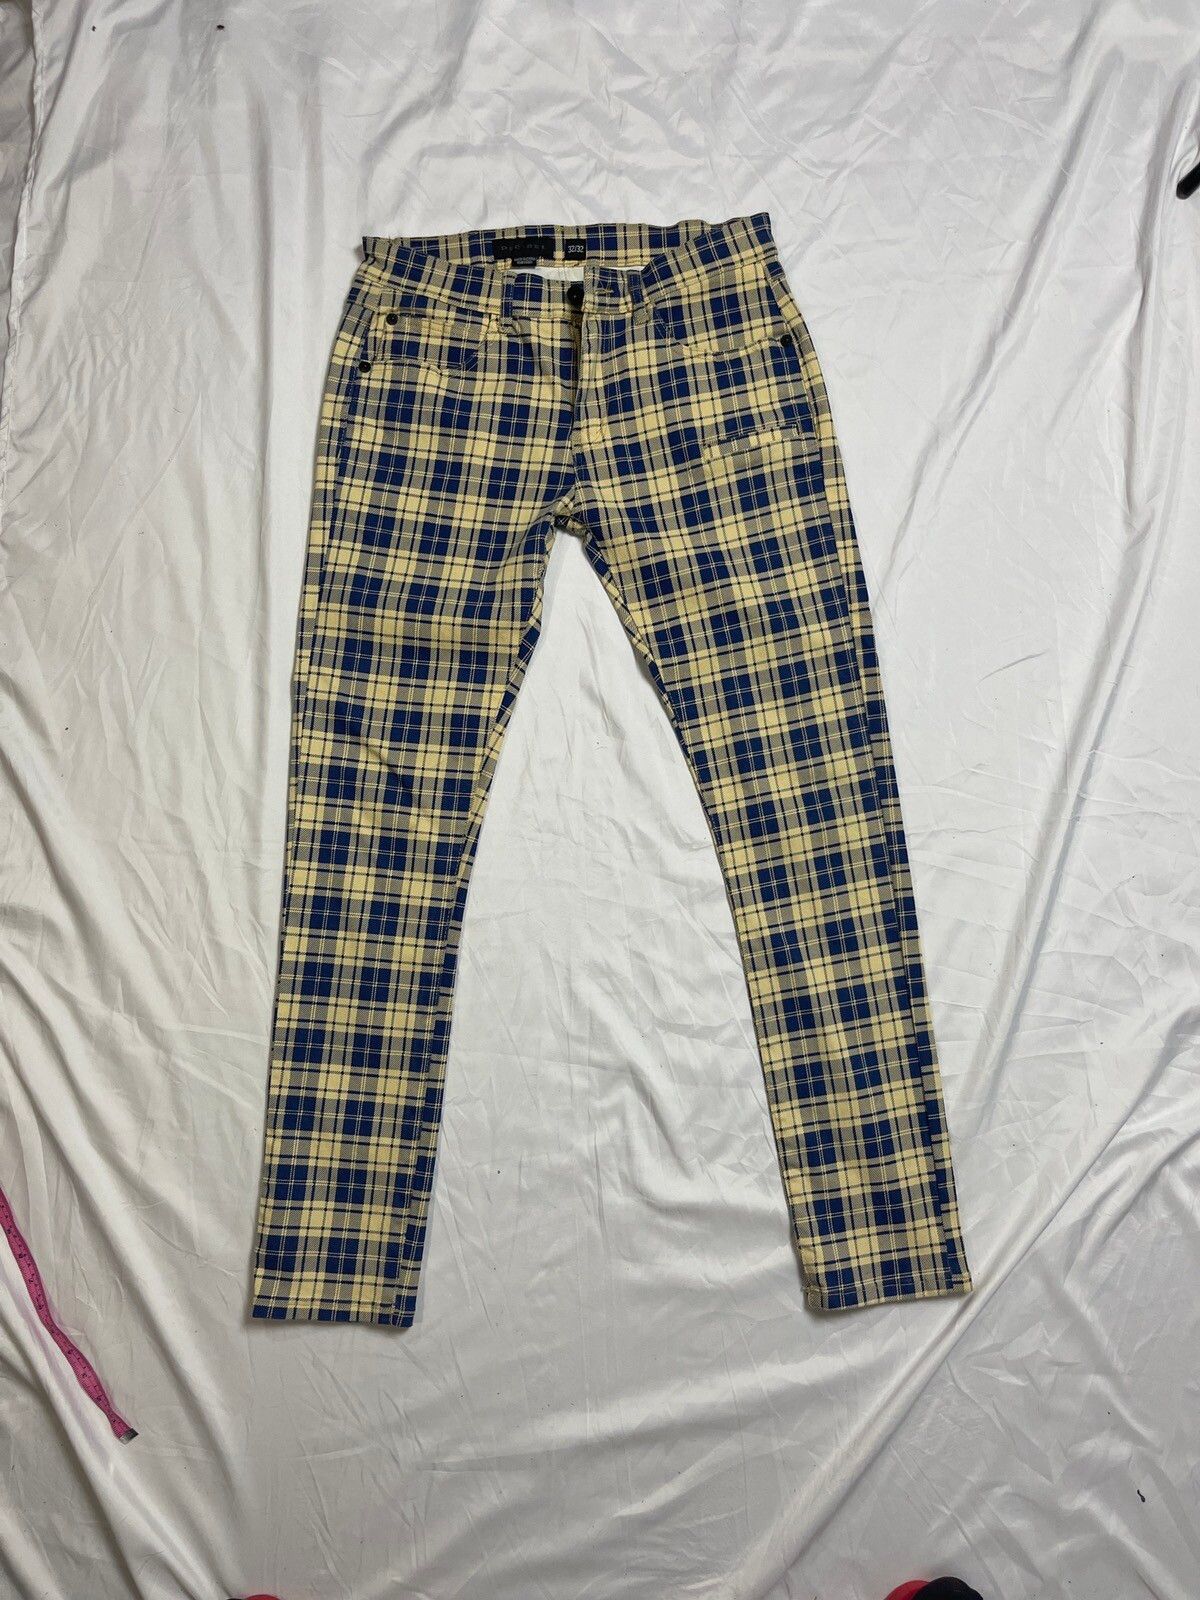 Decibel Decibel Printed plaid pants | Grailed